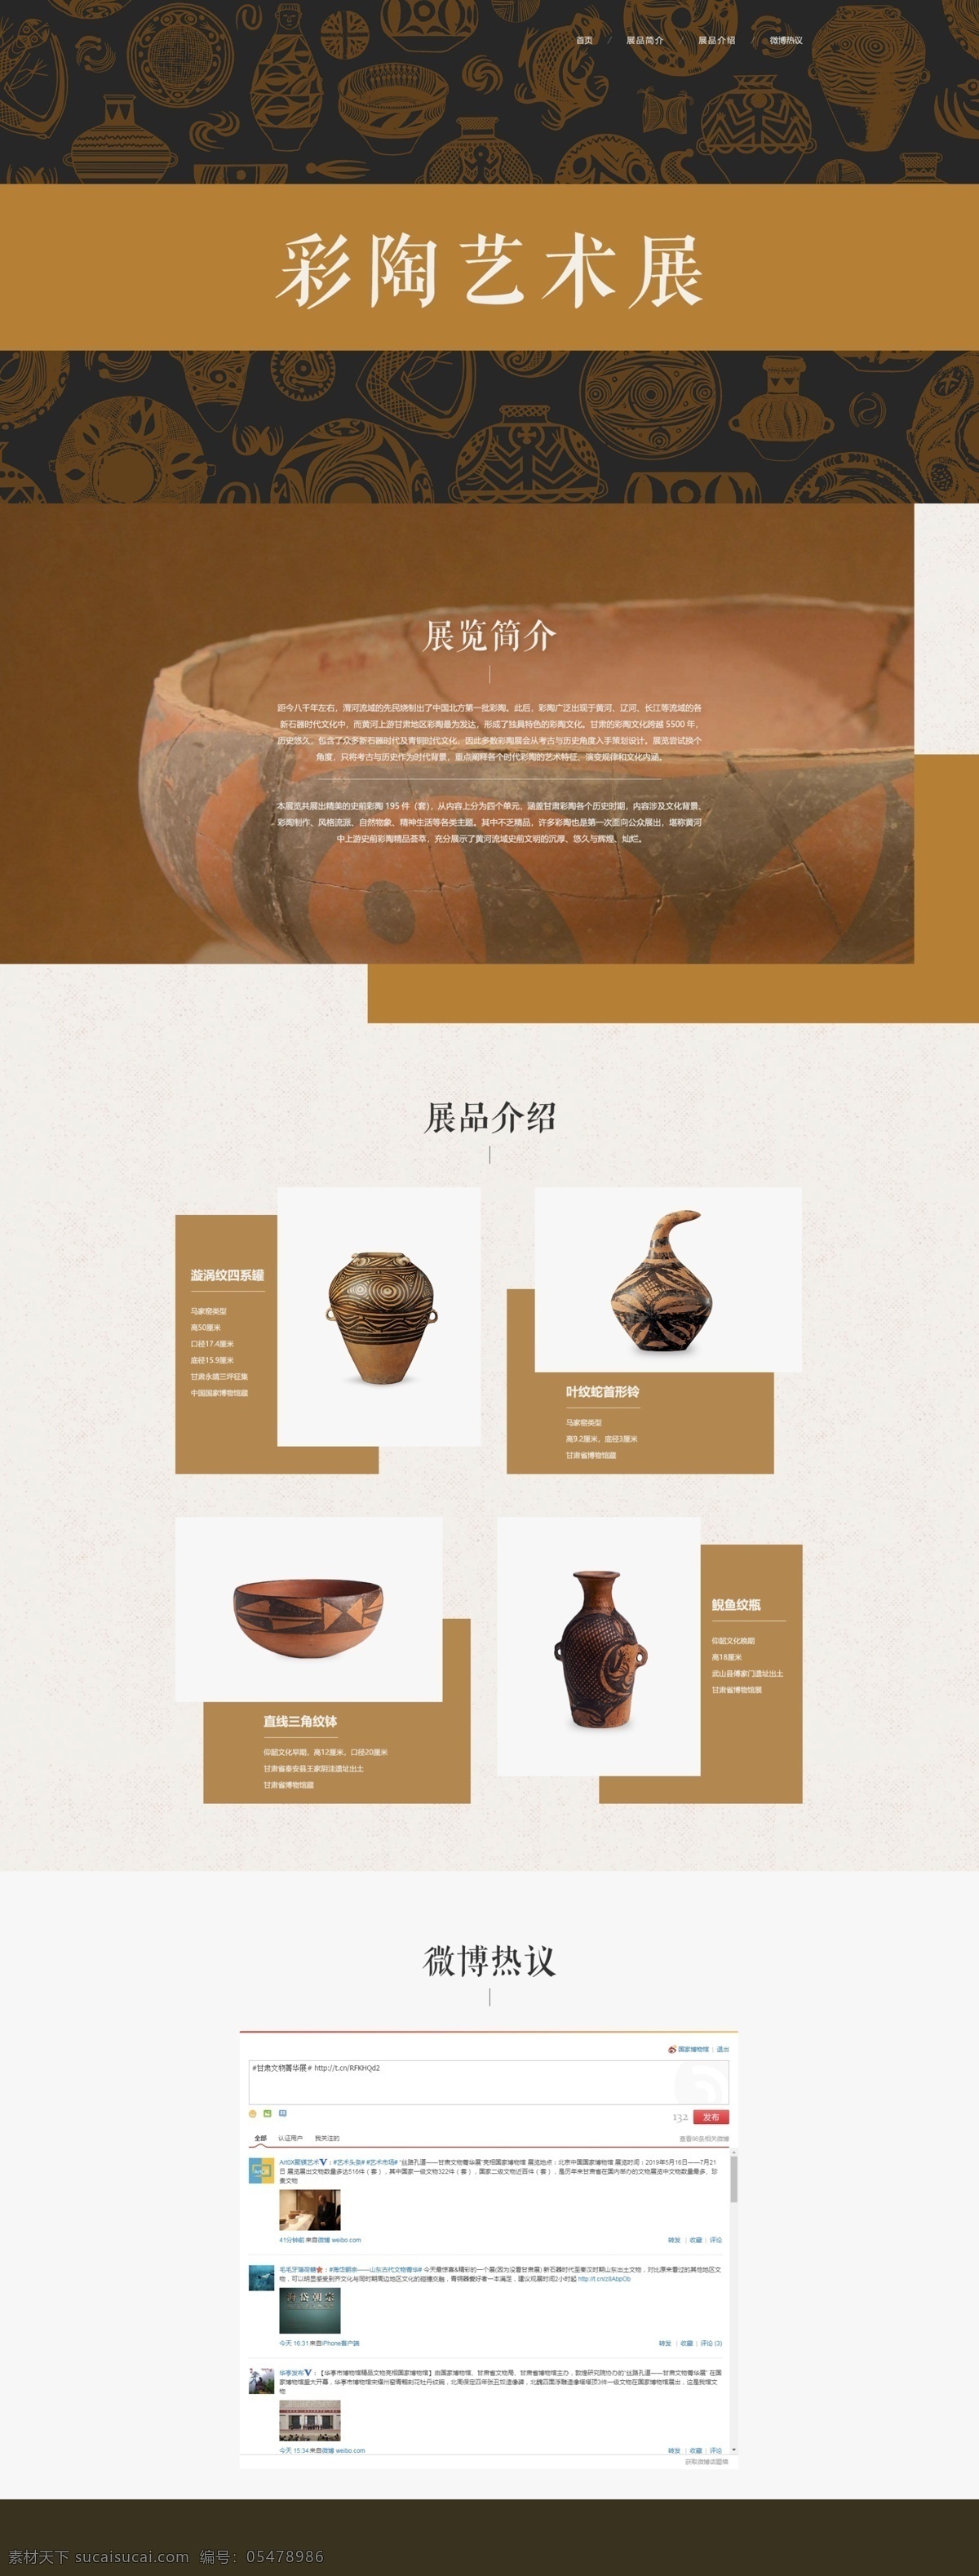 彩陶艺术展 艺术展专题页 专题页 产品专题页 产品网站 艺术品网站 web 界面设计 中文模板